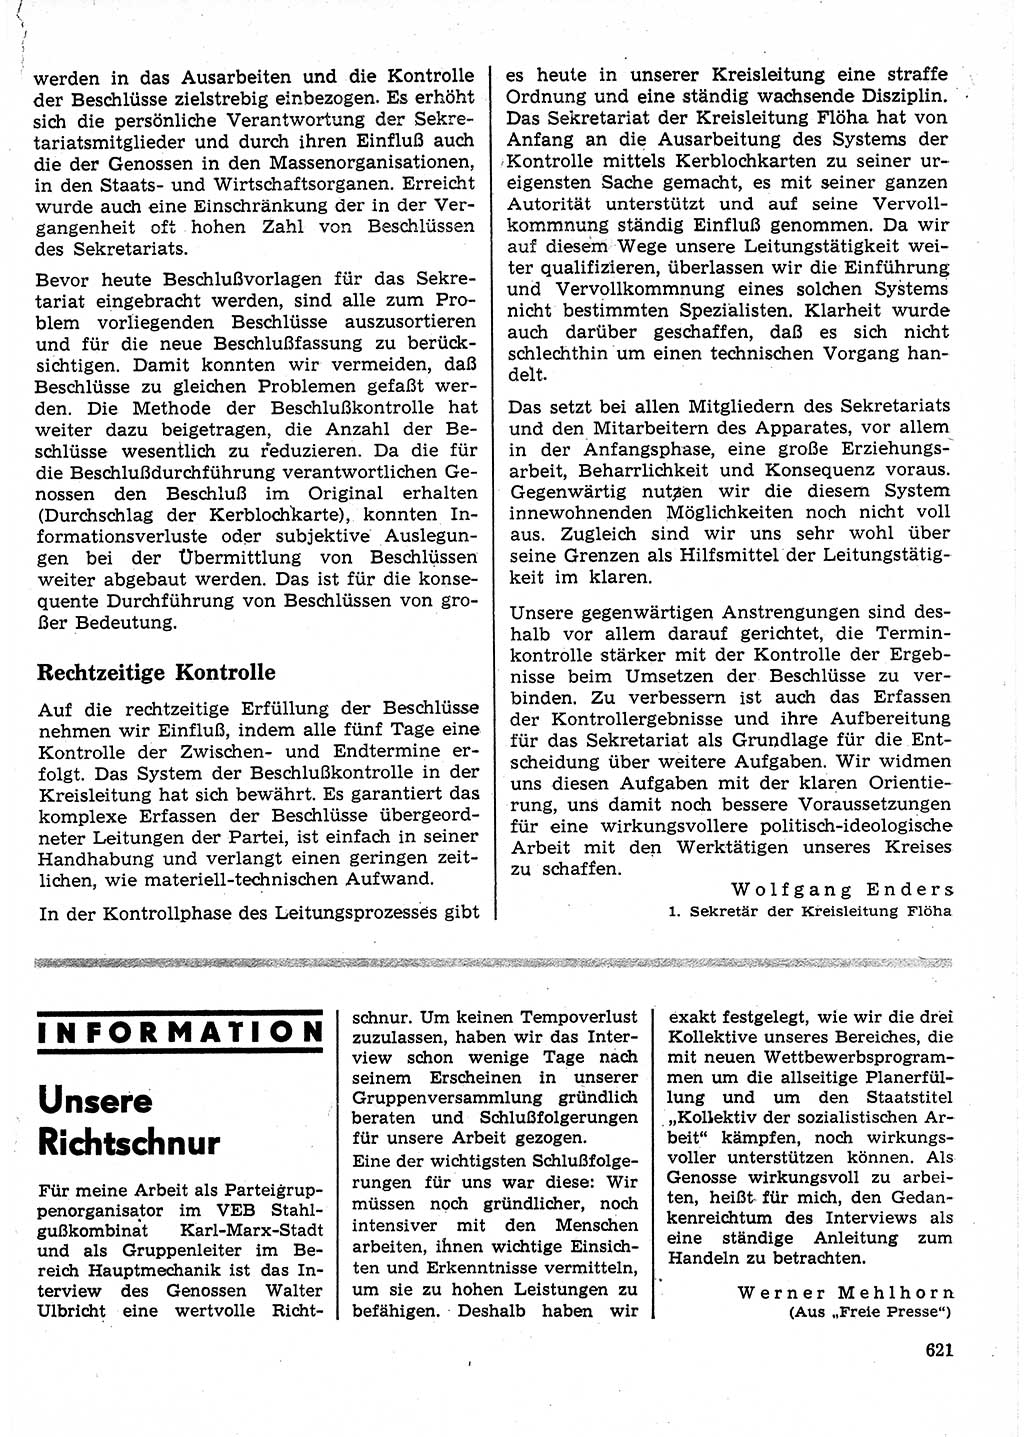 Neuer Weg (NW), Organ des Zentralkomitees (ZK) der SED (Sozialistische Einheitspartei Deutschlands) für Fragen des Parteilebens, 25. Jahrgang [Deutsche Demokratische Republik (DDR)] 1970, Seite 621 (NW ZK SED DDR 1970, S. 621)